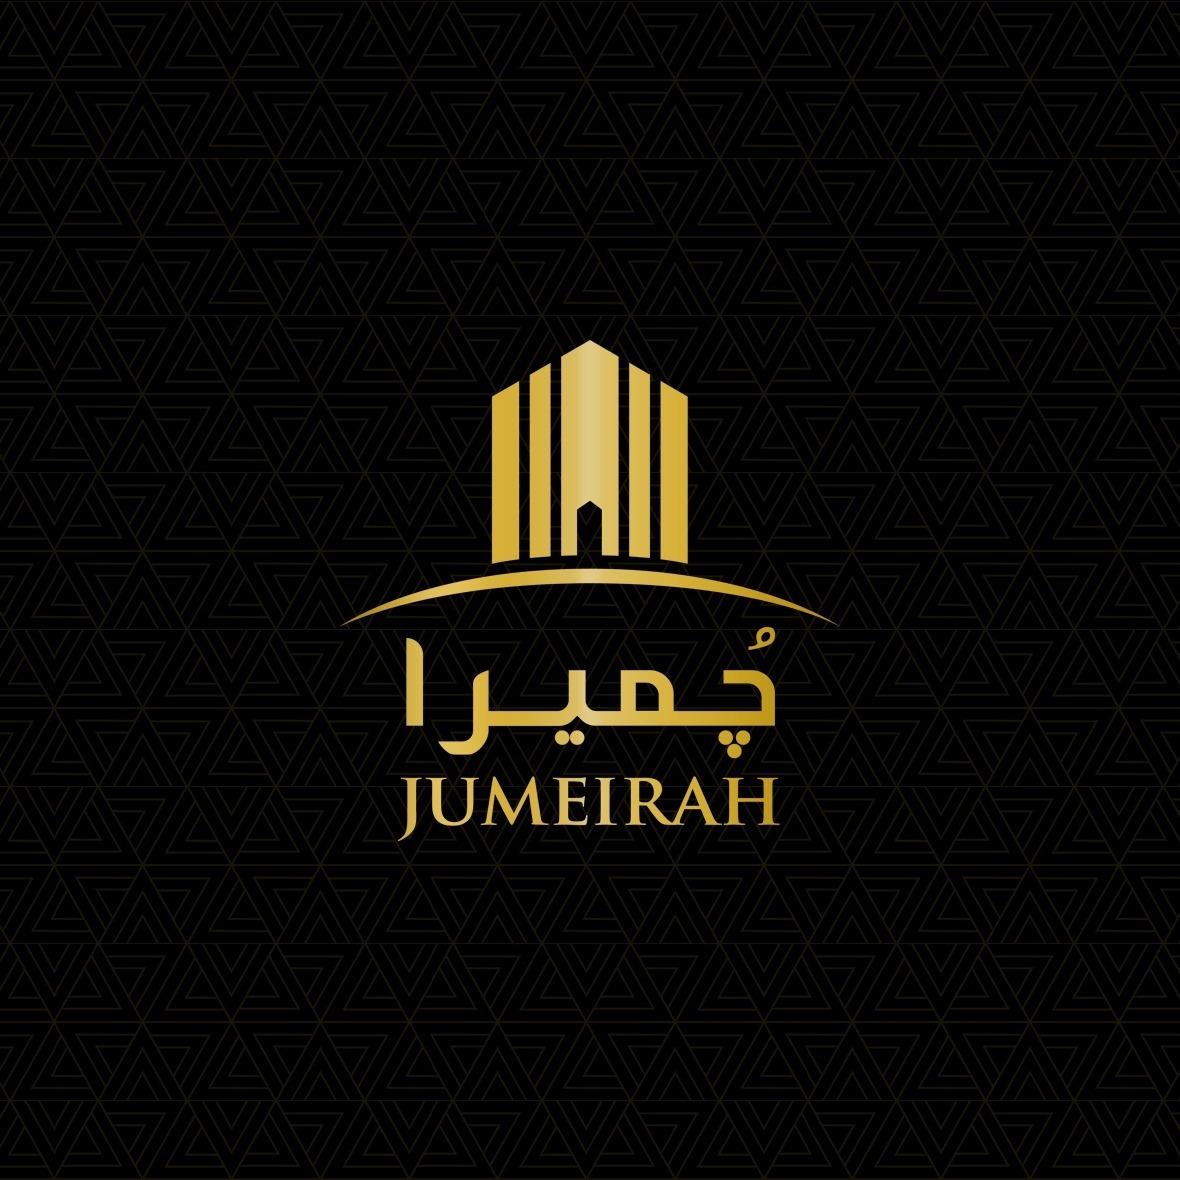 Jumeirah development